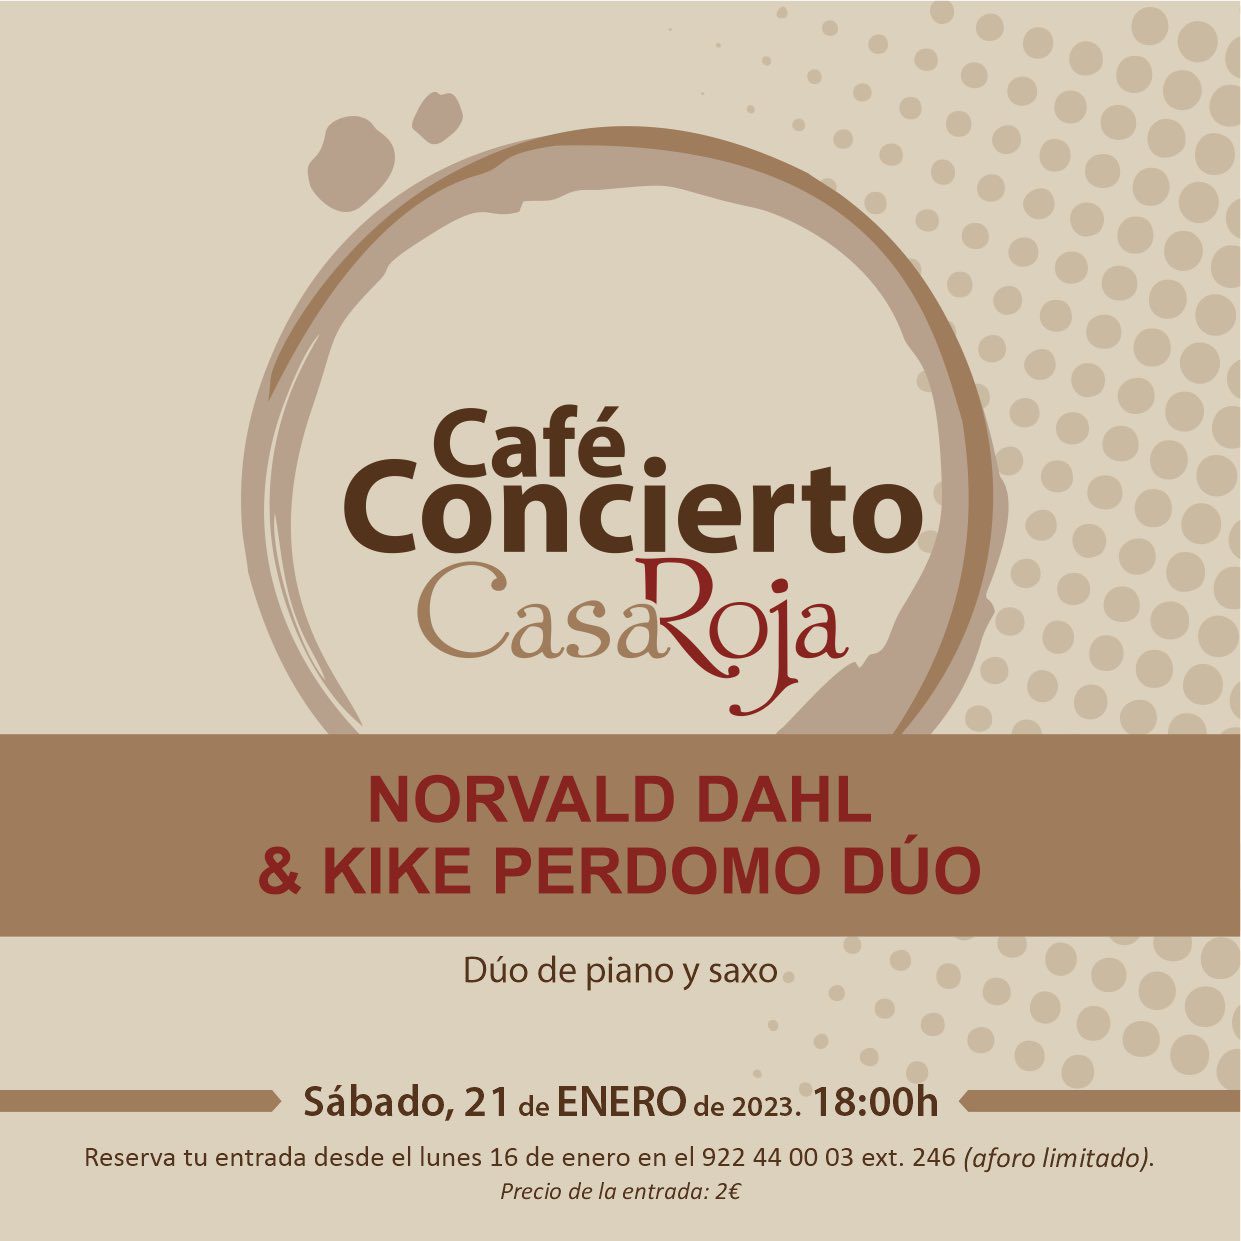 El dúo de piano y saxo Norvald Dahl & Kike Perdomo actuarán este sábado en una nueva sesión del Café Concierto de Villa de Mazo 